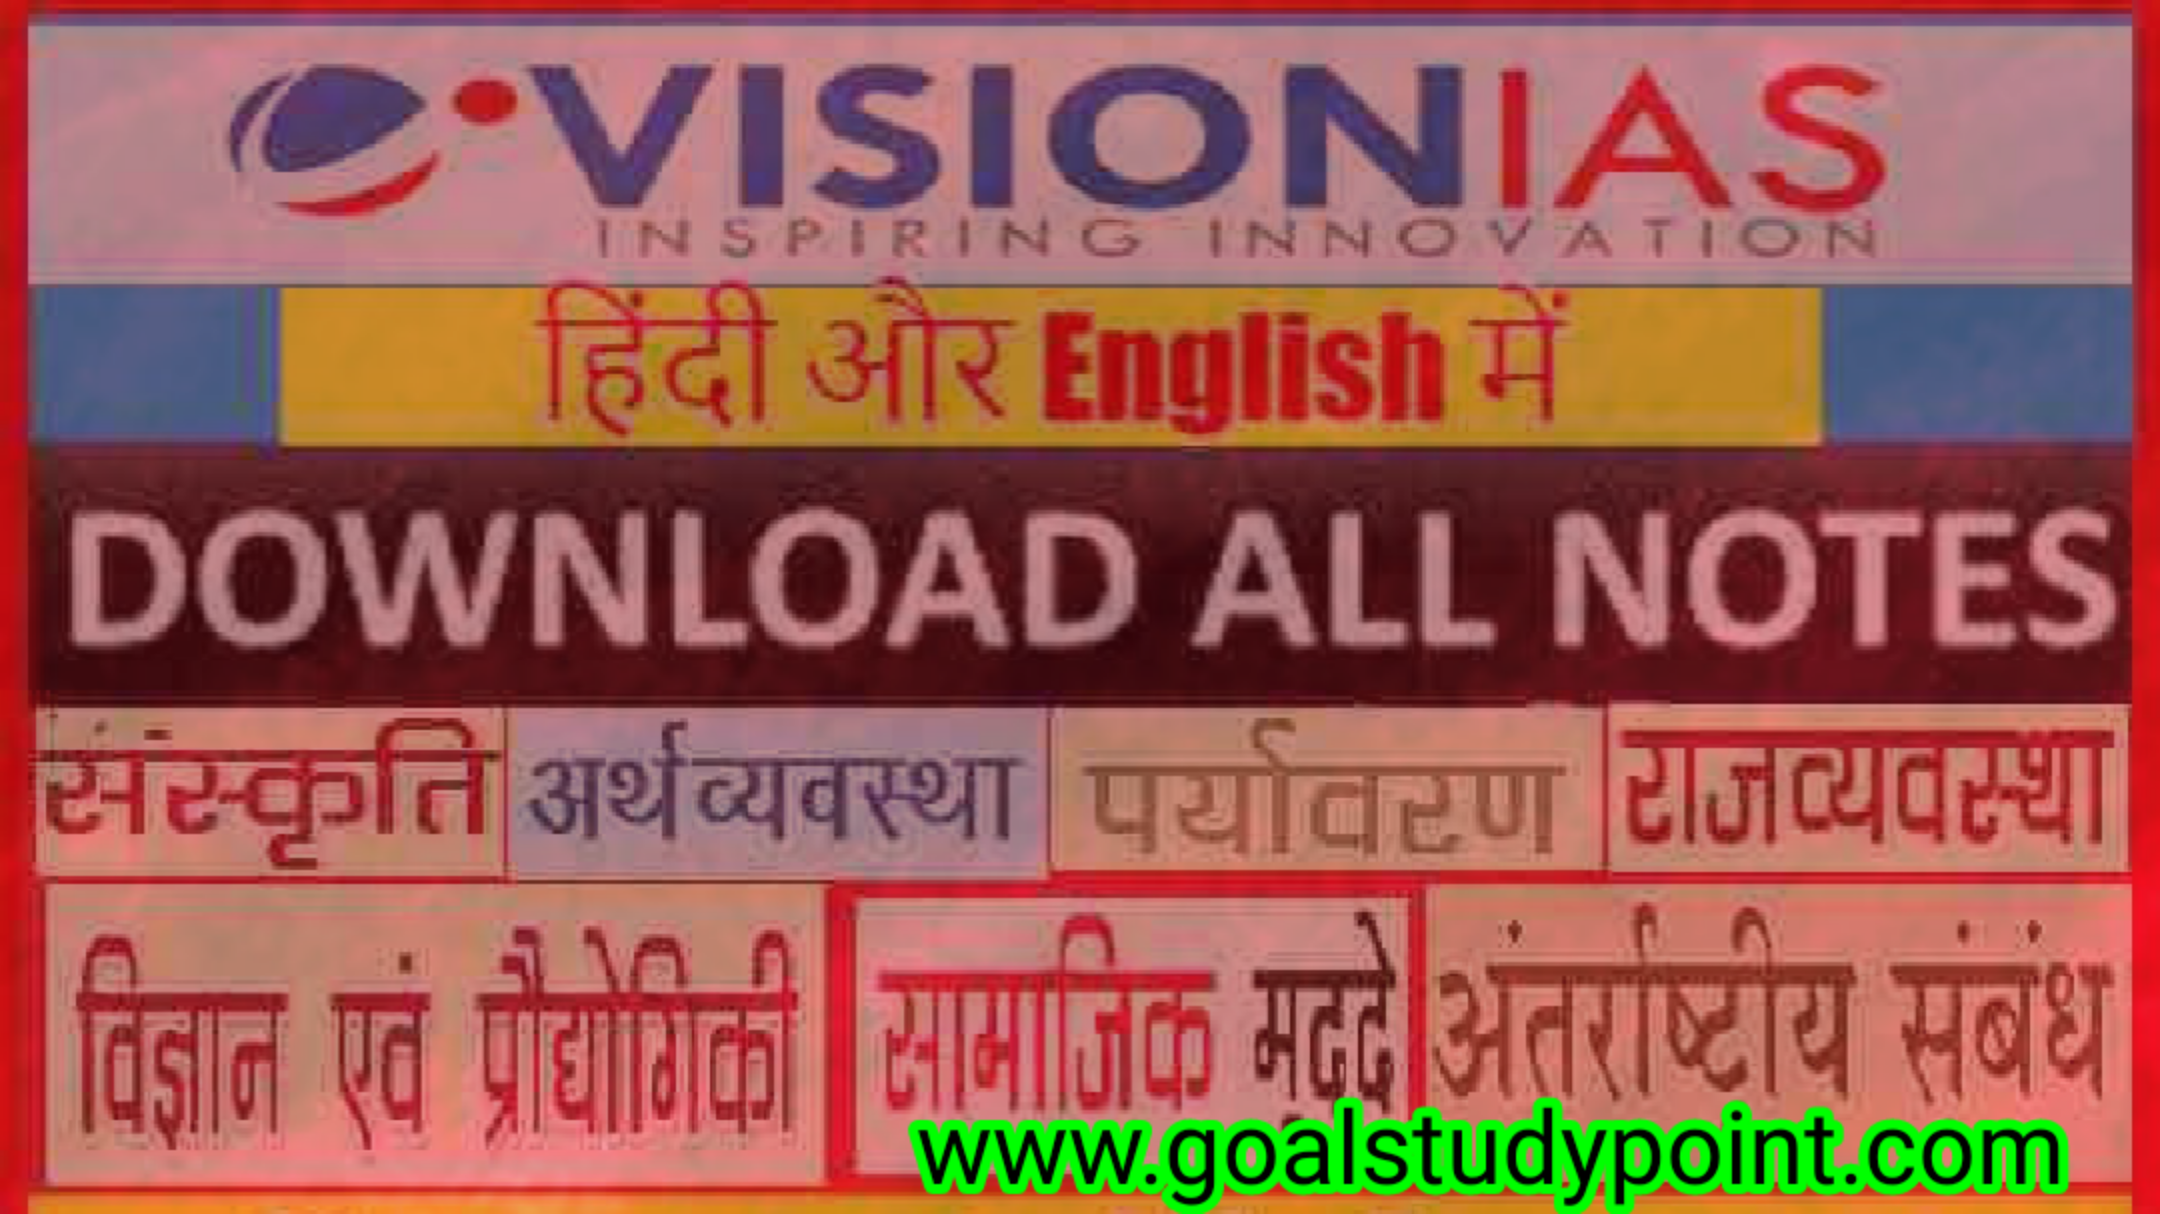 Vision ias modern history notes pdf in hindi